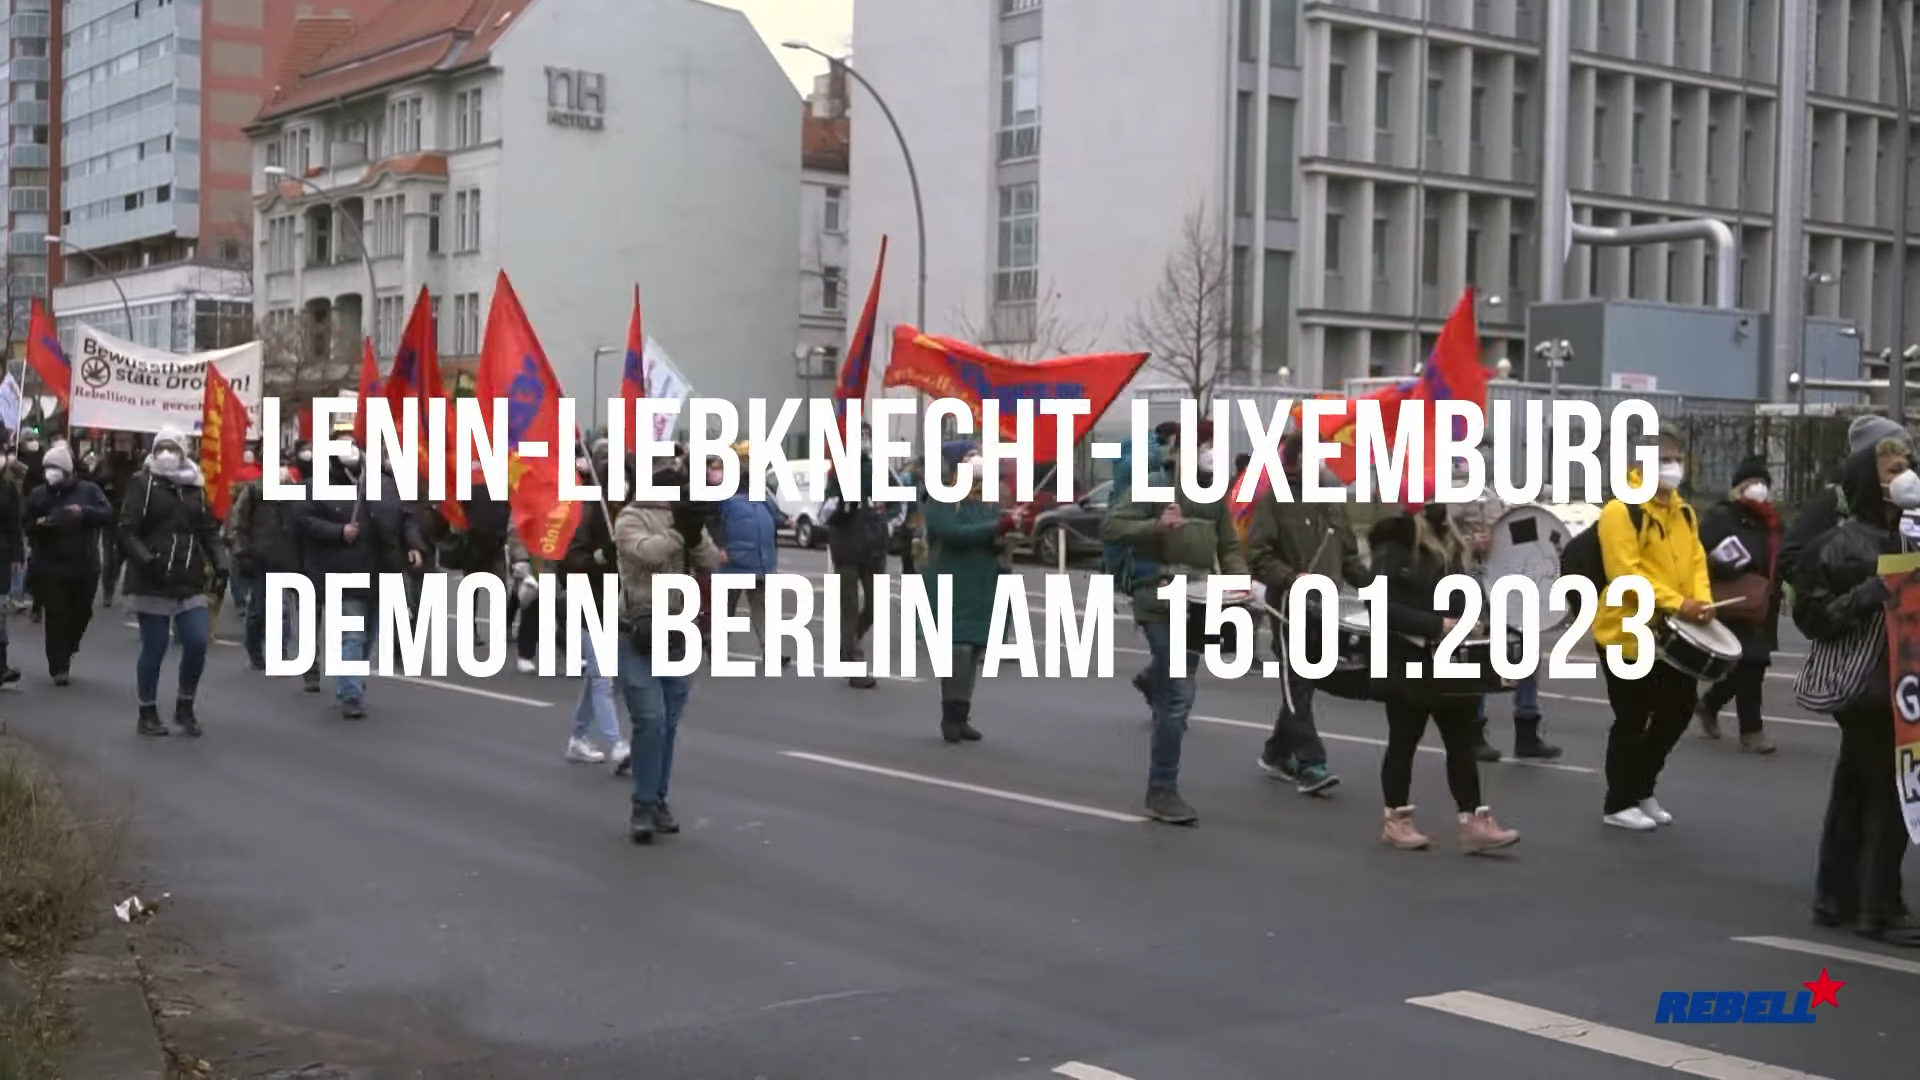 You are currently viewing Video: Lenin-Liebknecht-Luxemburg-Aktivitäten am 14./15.1.2023 – Seid dabei!